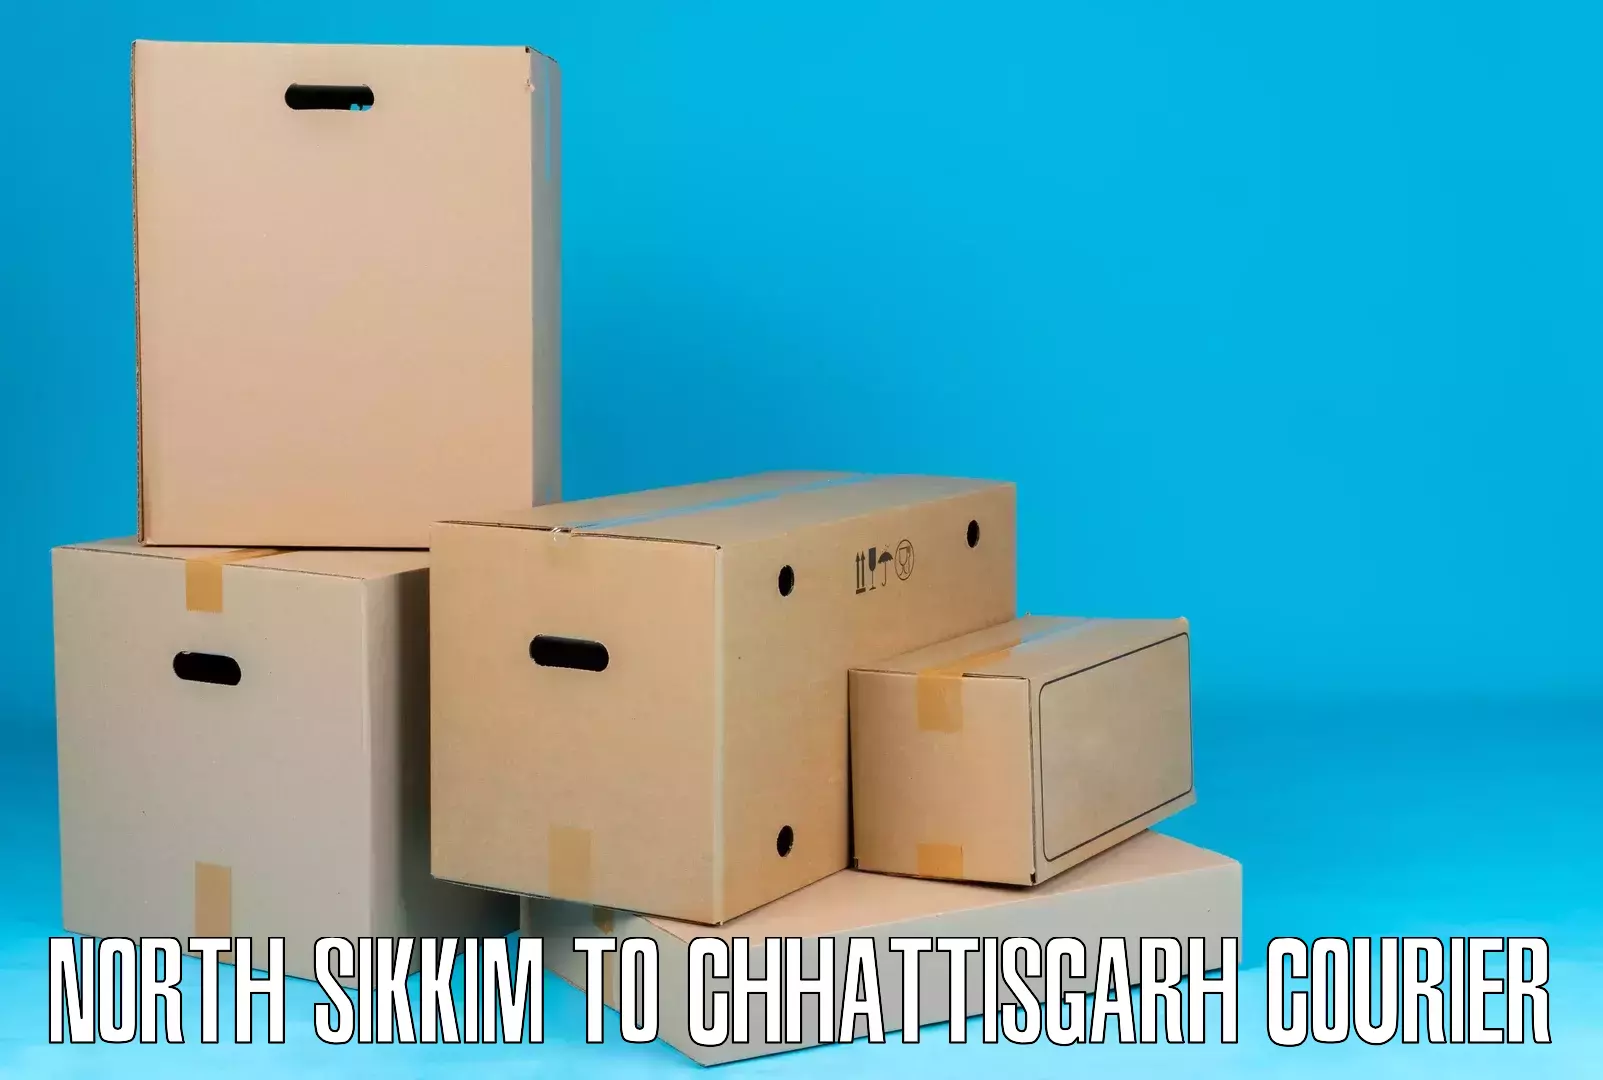 Efficient cargo handling North Sikkim to Chhattisgarh